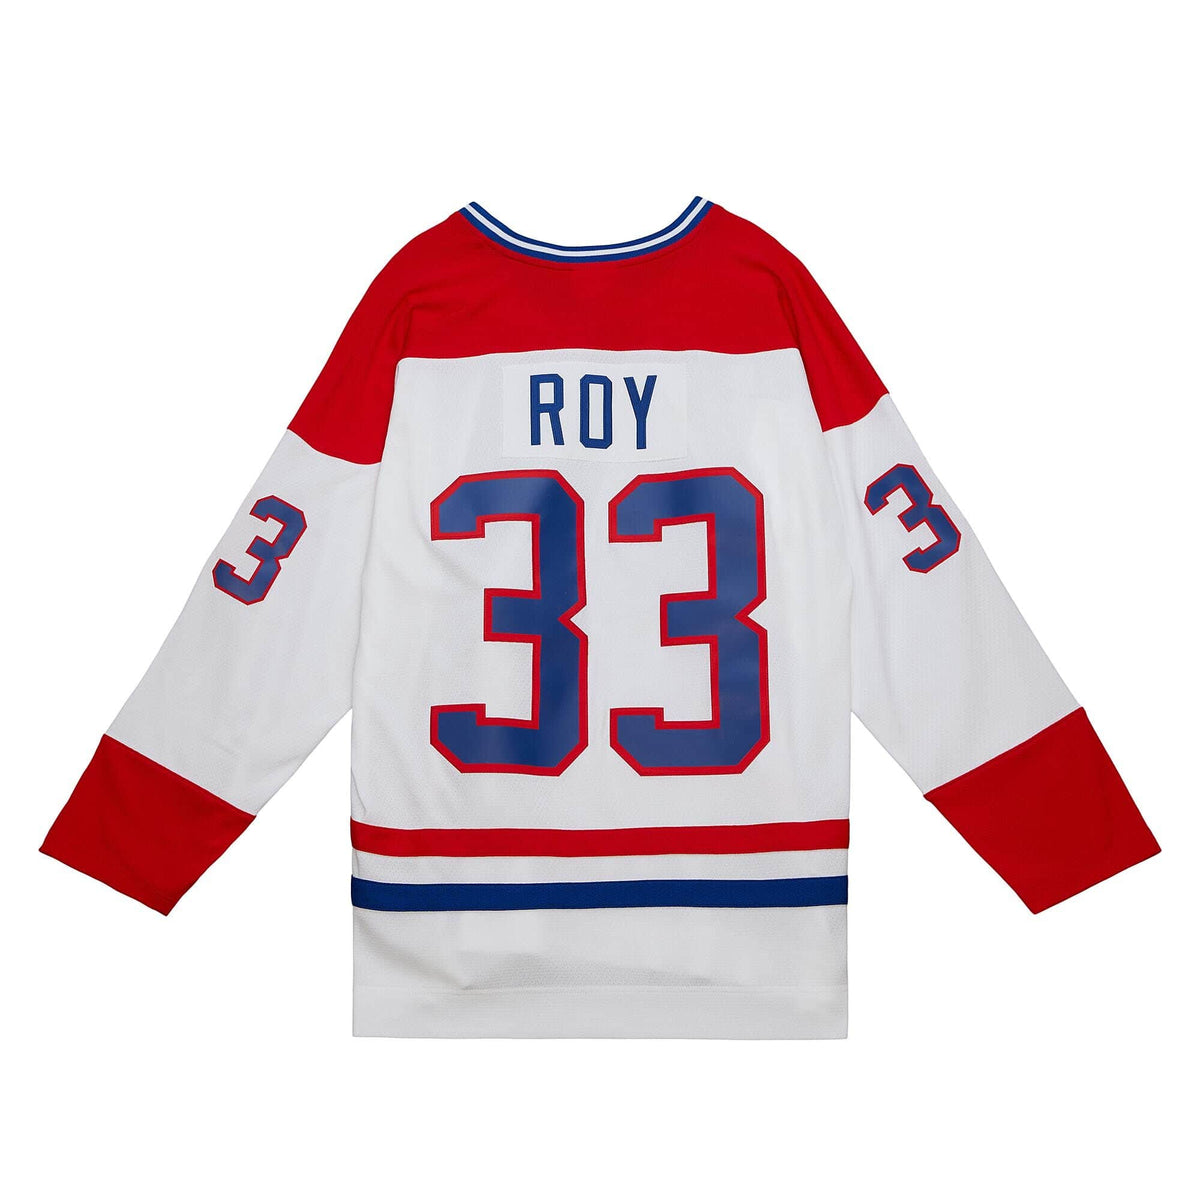 RON HEXTALL Philadelphia Flyers CCM Vintage Throwback Away NHL Hockey Jersey  - Custom Throwback Jerseys